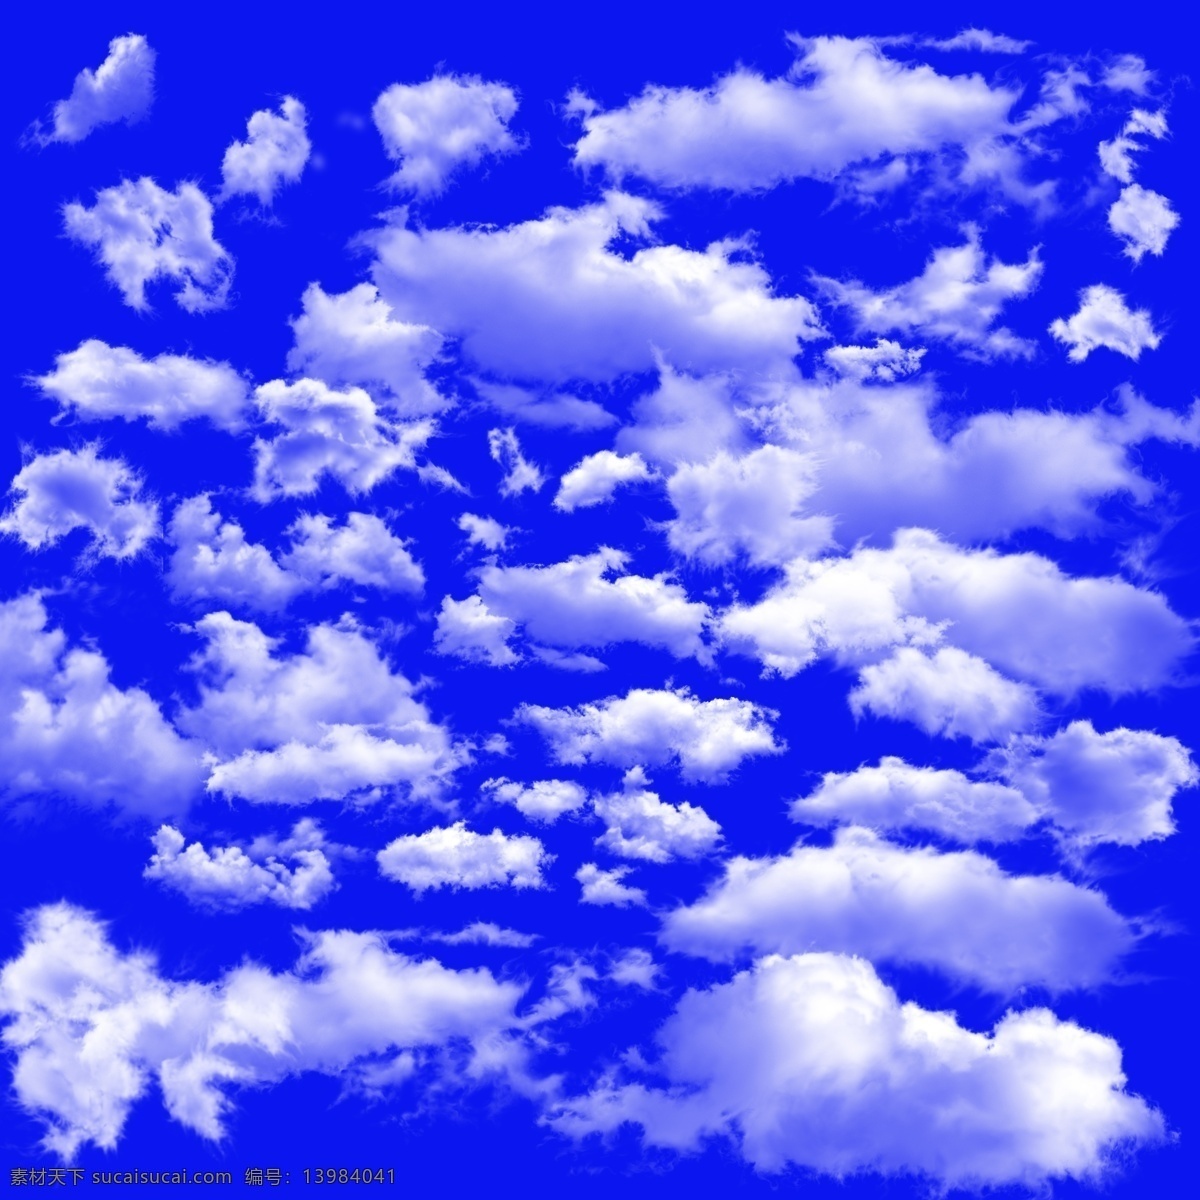 云朵 云朵素材下载 云朵模板下载 白云 白云素材下载 白云模板下载 云 云层 真云 分层 白云图案 云彩 风景 天空白云 蓝天白云 源文件